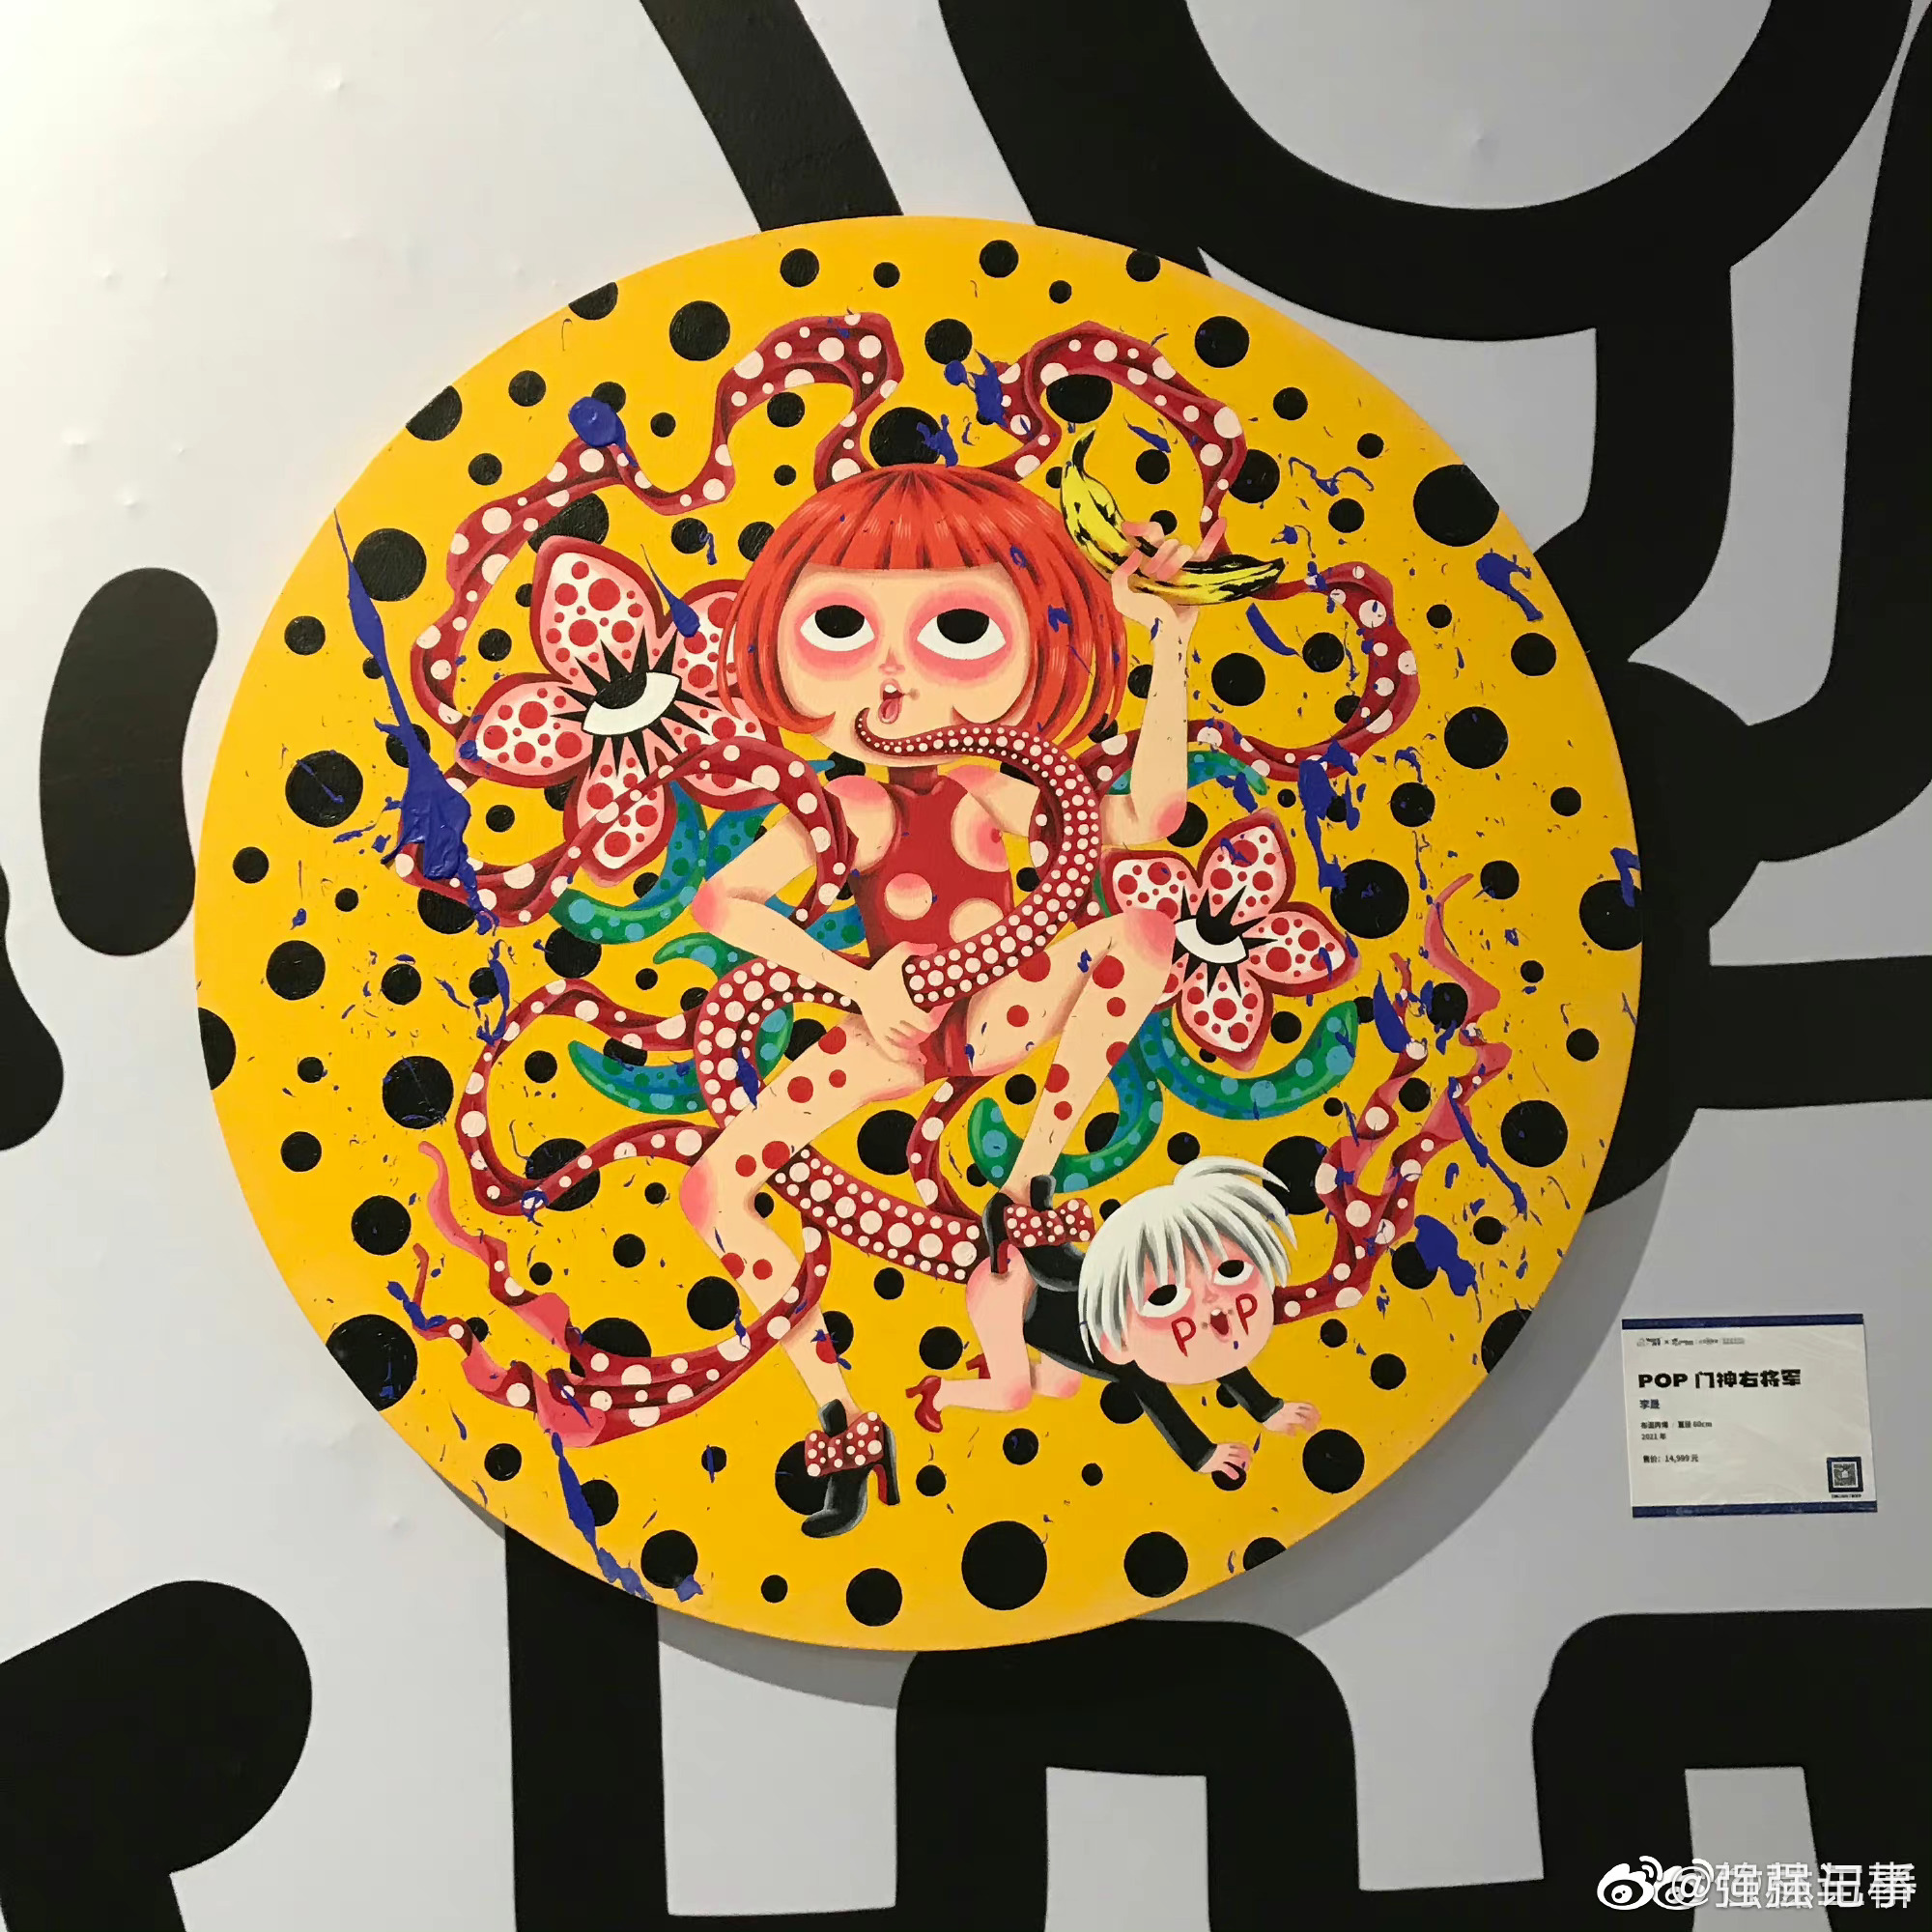 商场回应艺术画展被指涉儿童色情